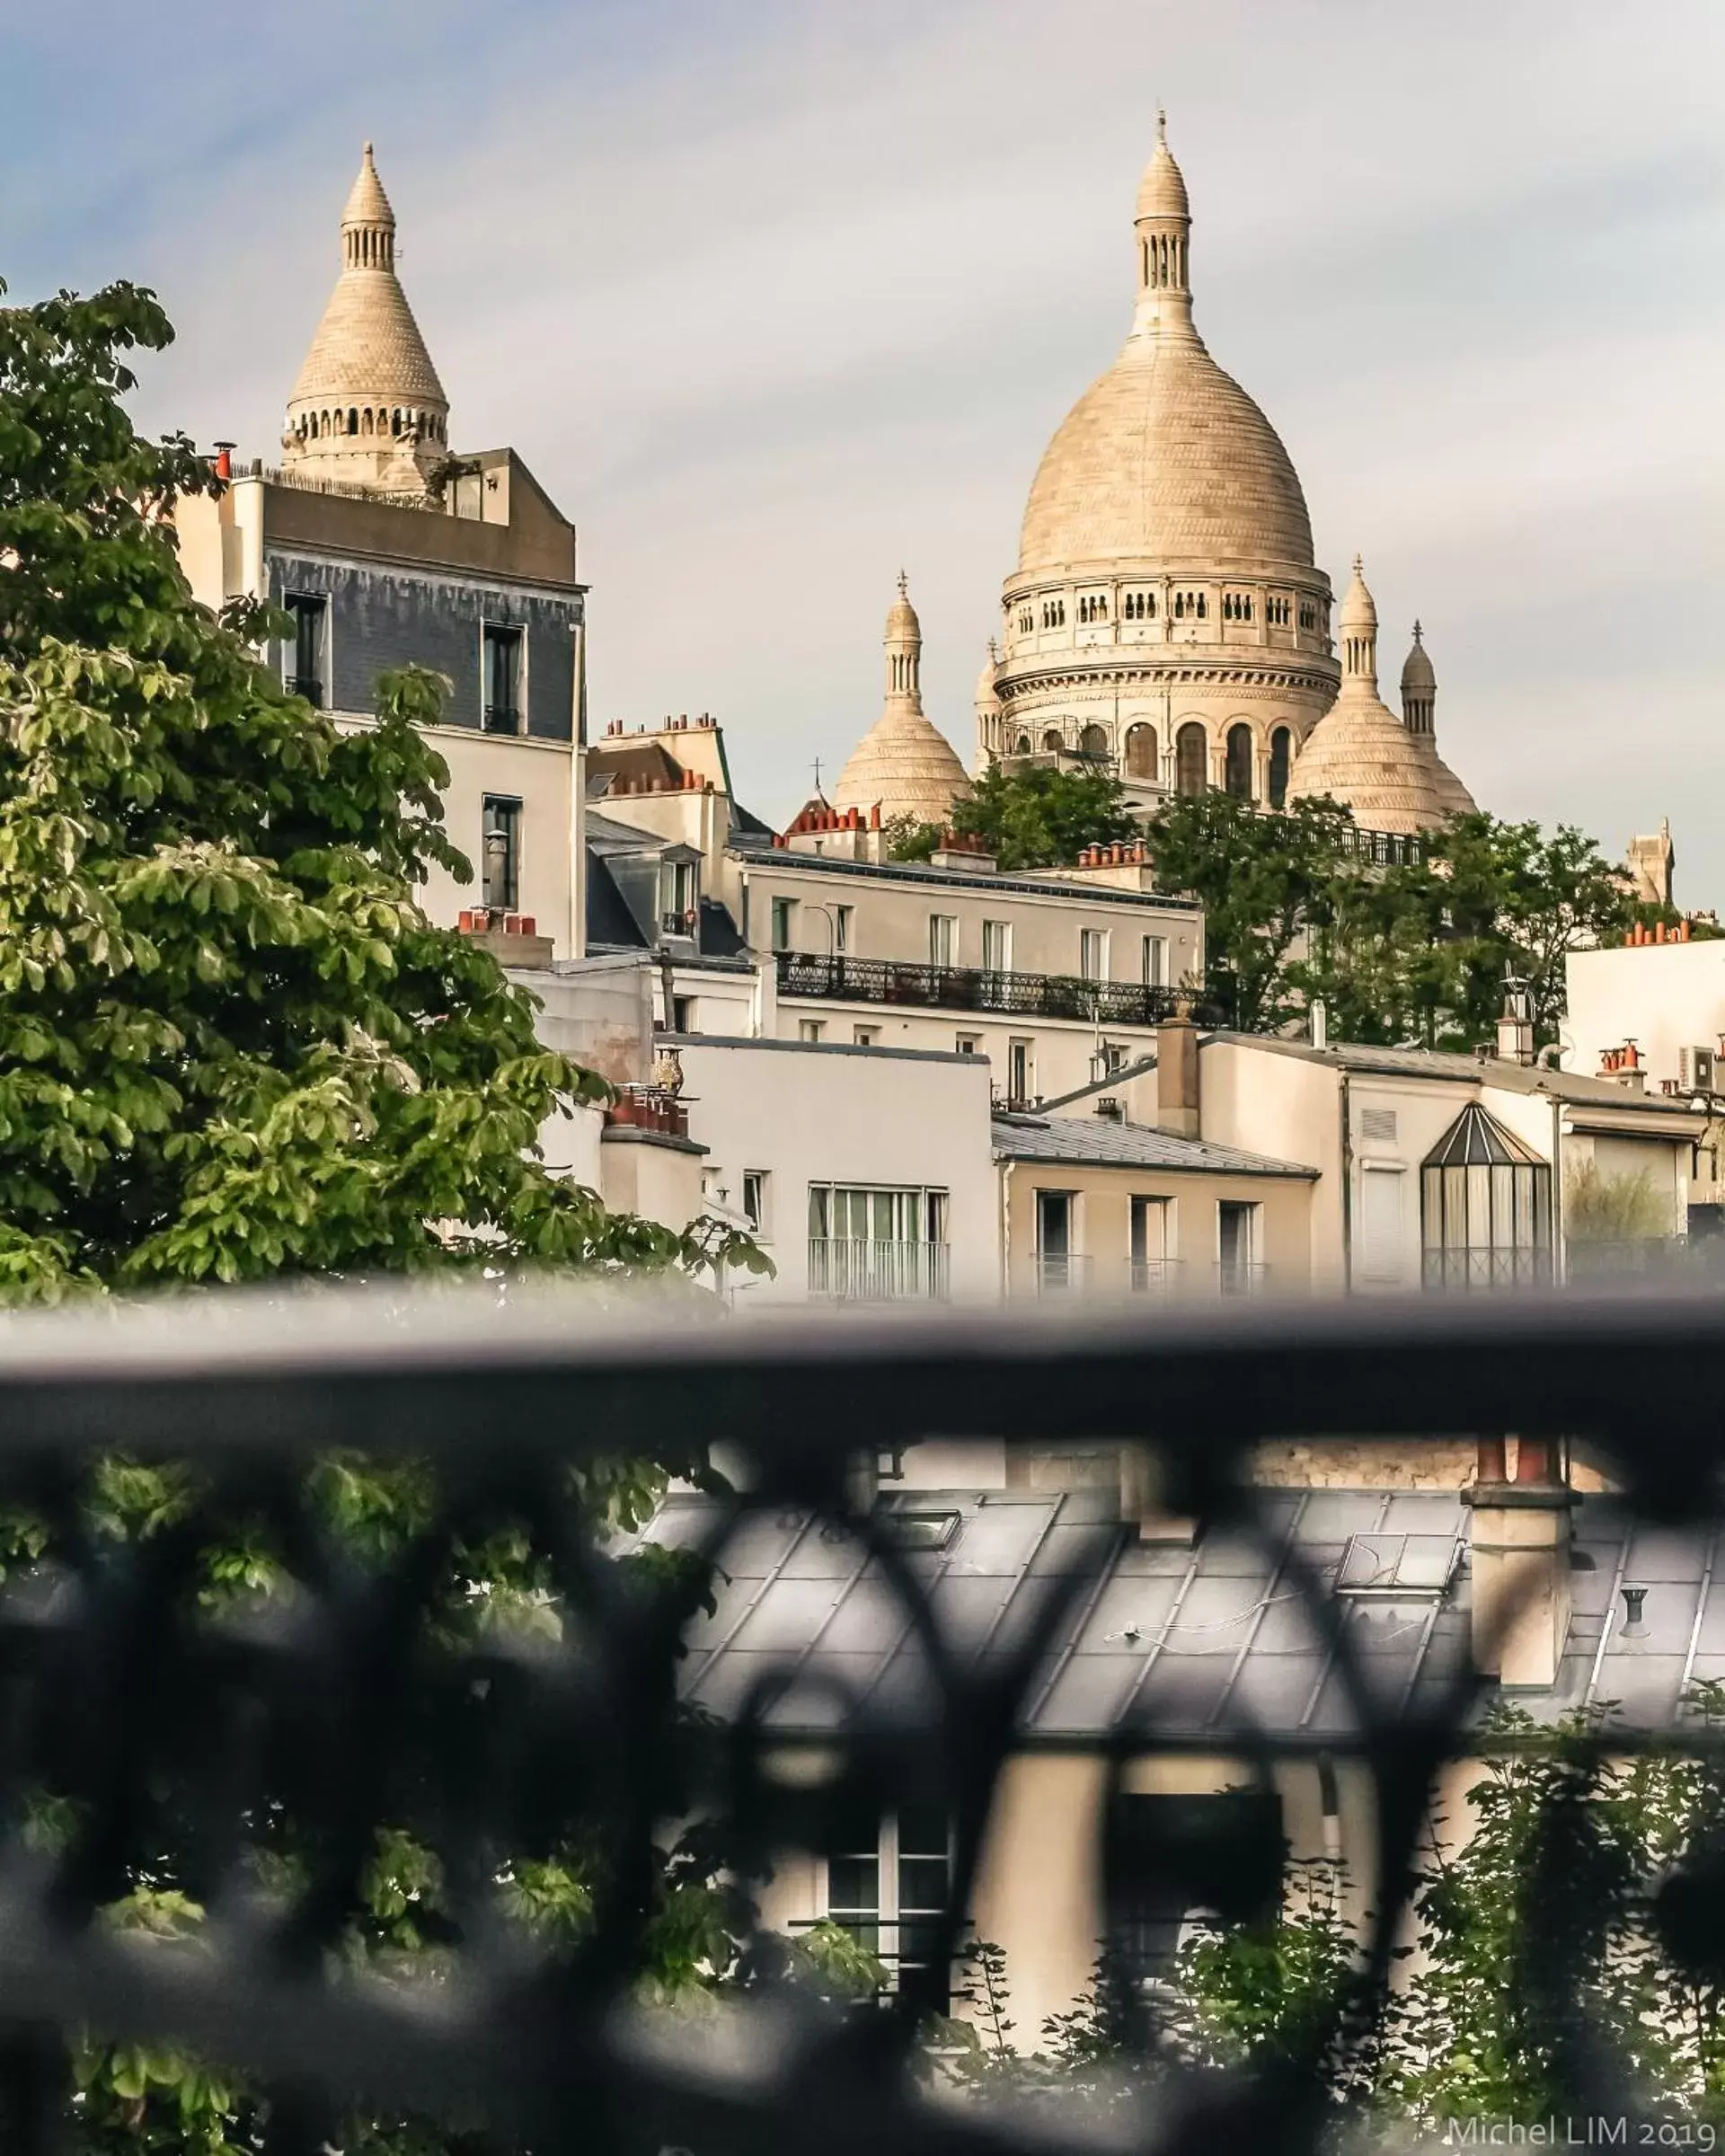 Nearby landmark in Timhotel Montmartre